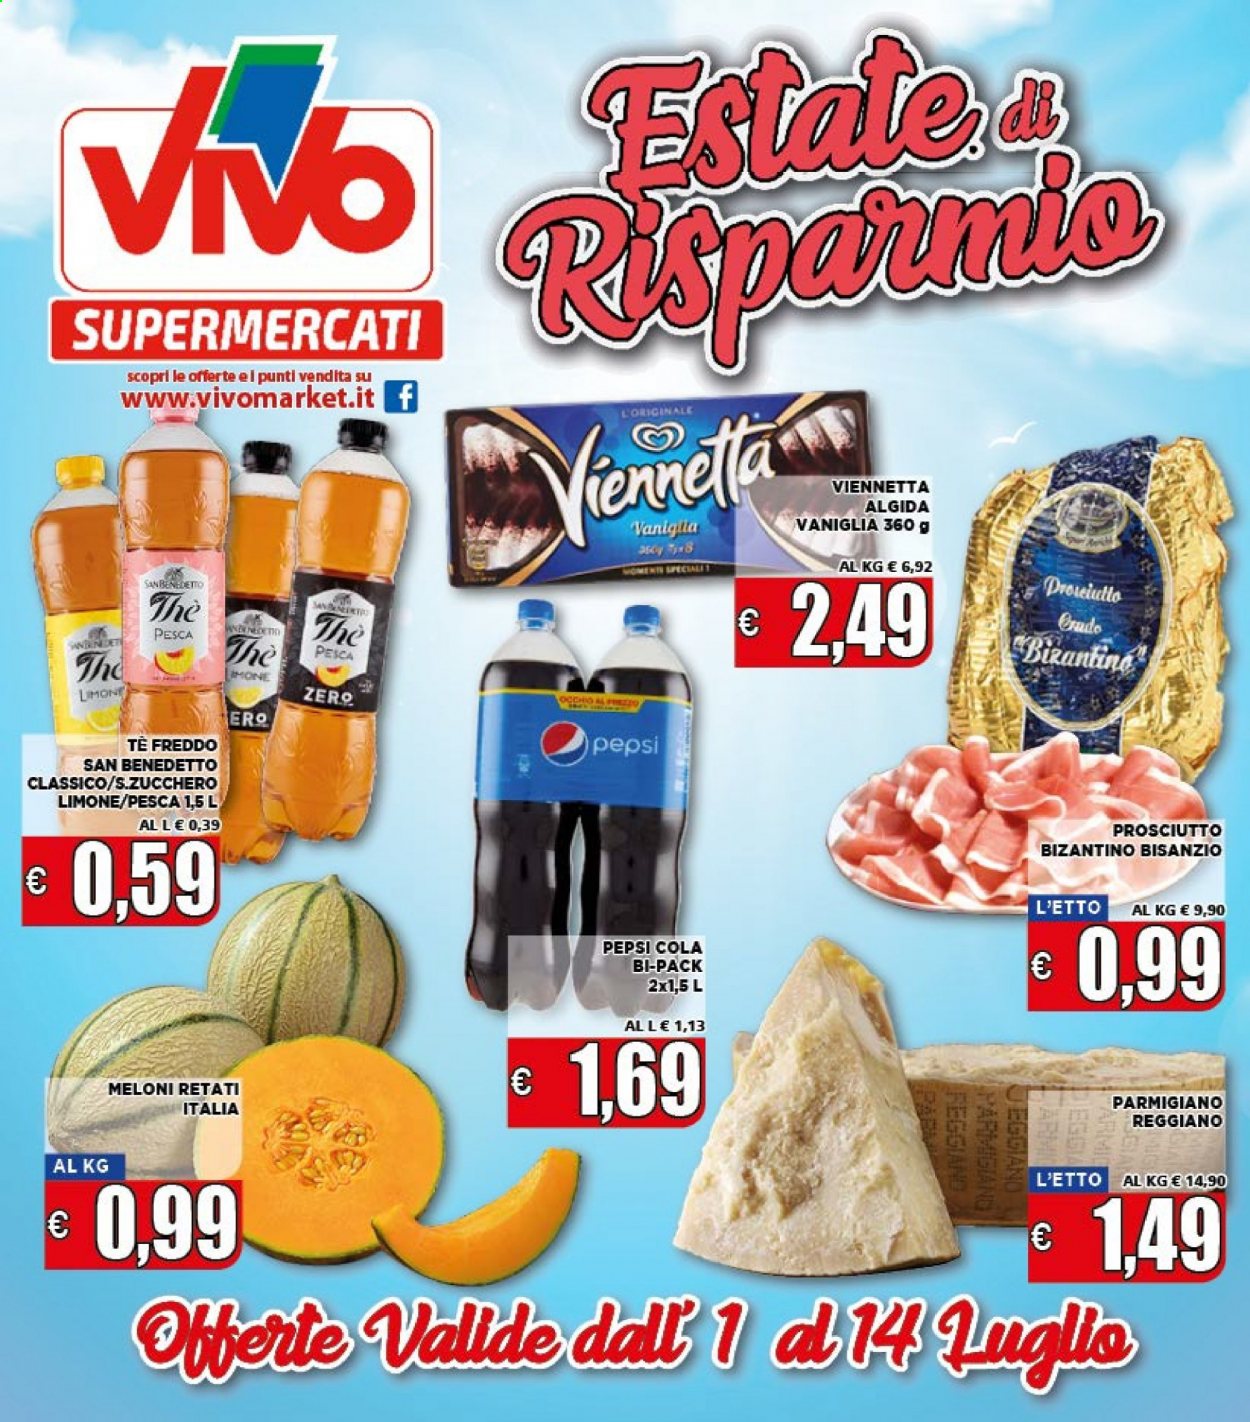 thumbnail - Volantino Supermercati VIVO - 1/7/2021 - 14/7/2021 - Prodotti in offerta - prosciutto, formaggio, parmigiano, gelato, Viennetta, Algida, zucchero, San Benedetto, Pepsi, tè freddo, bibita gassata. Pagina 1.